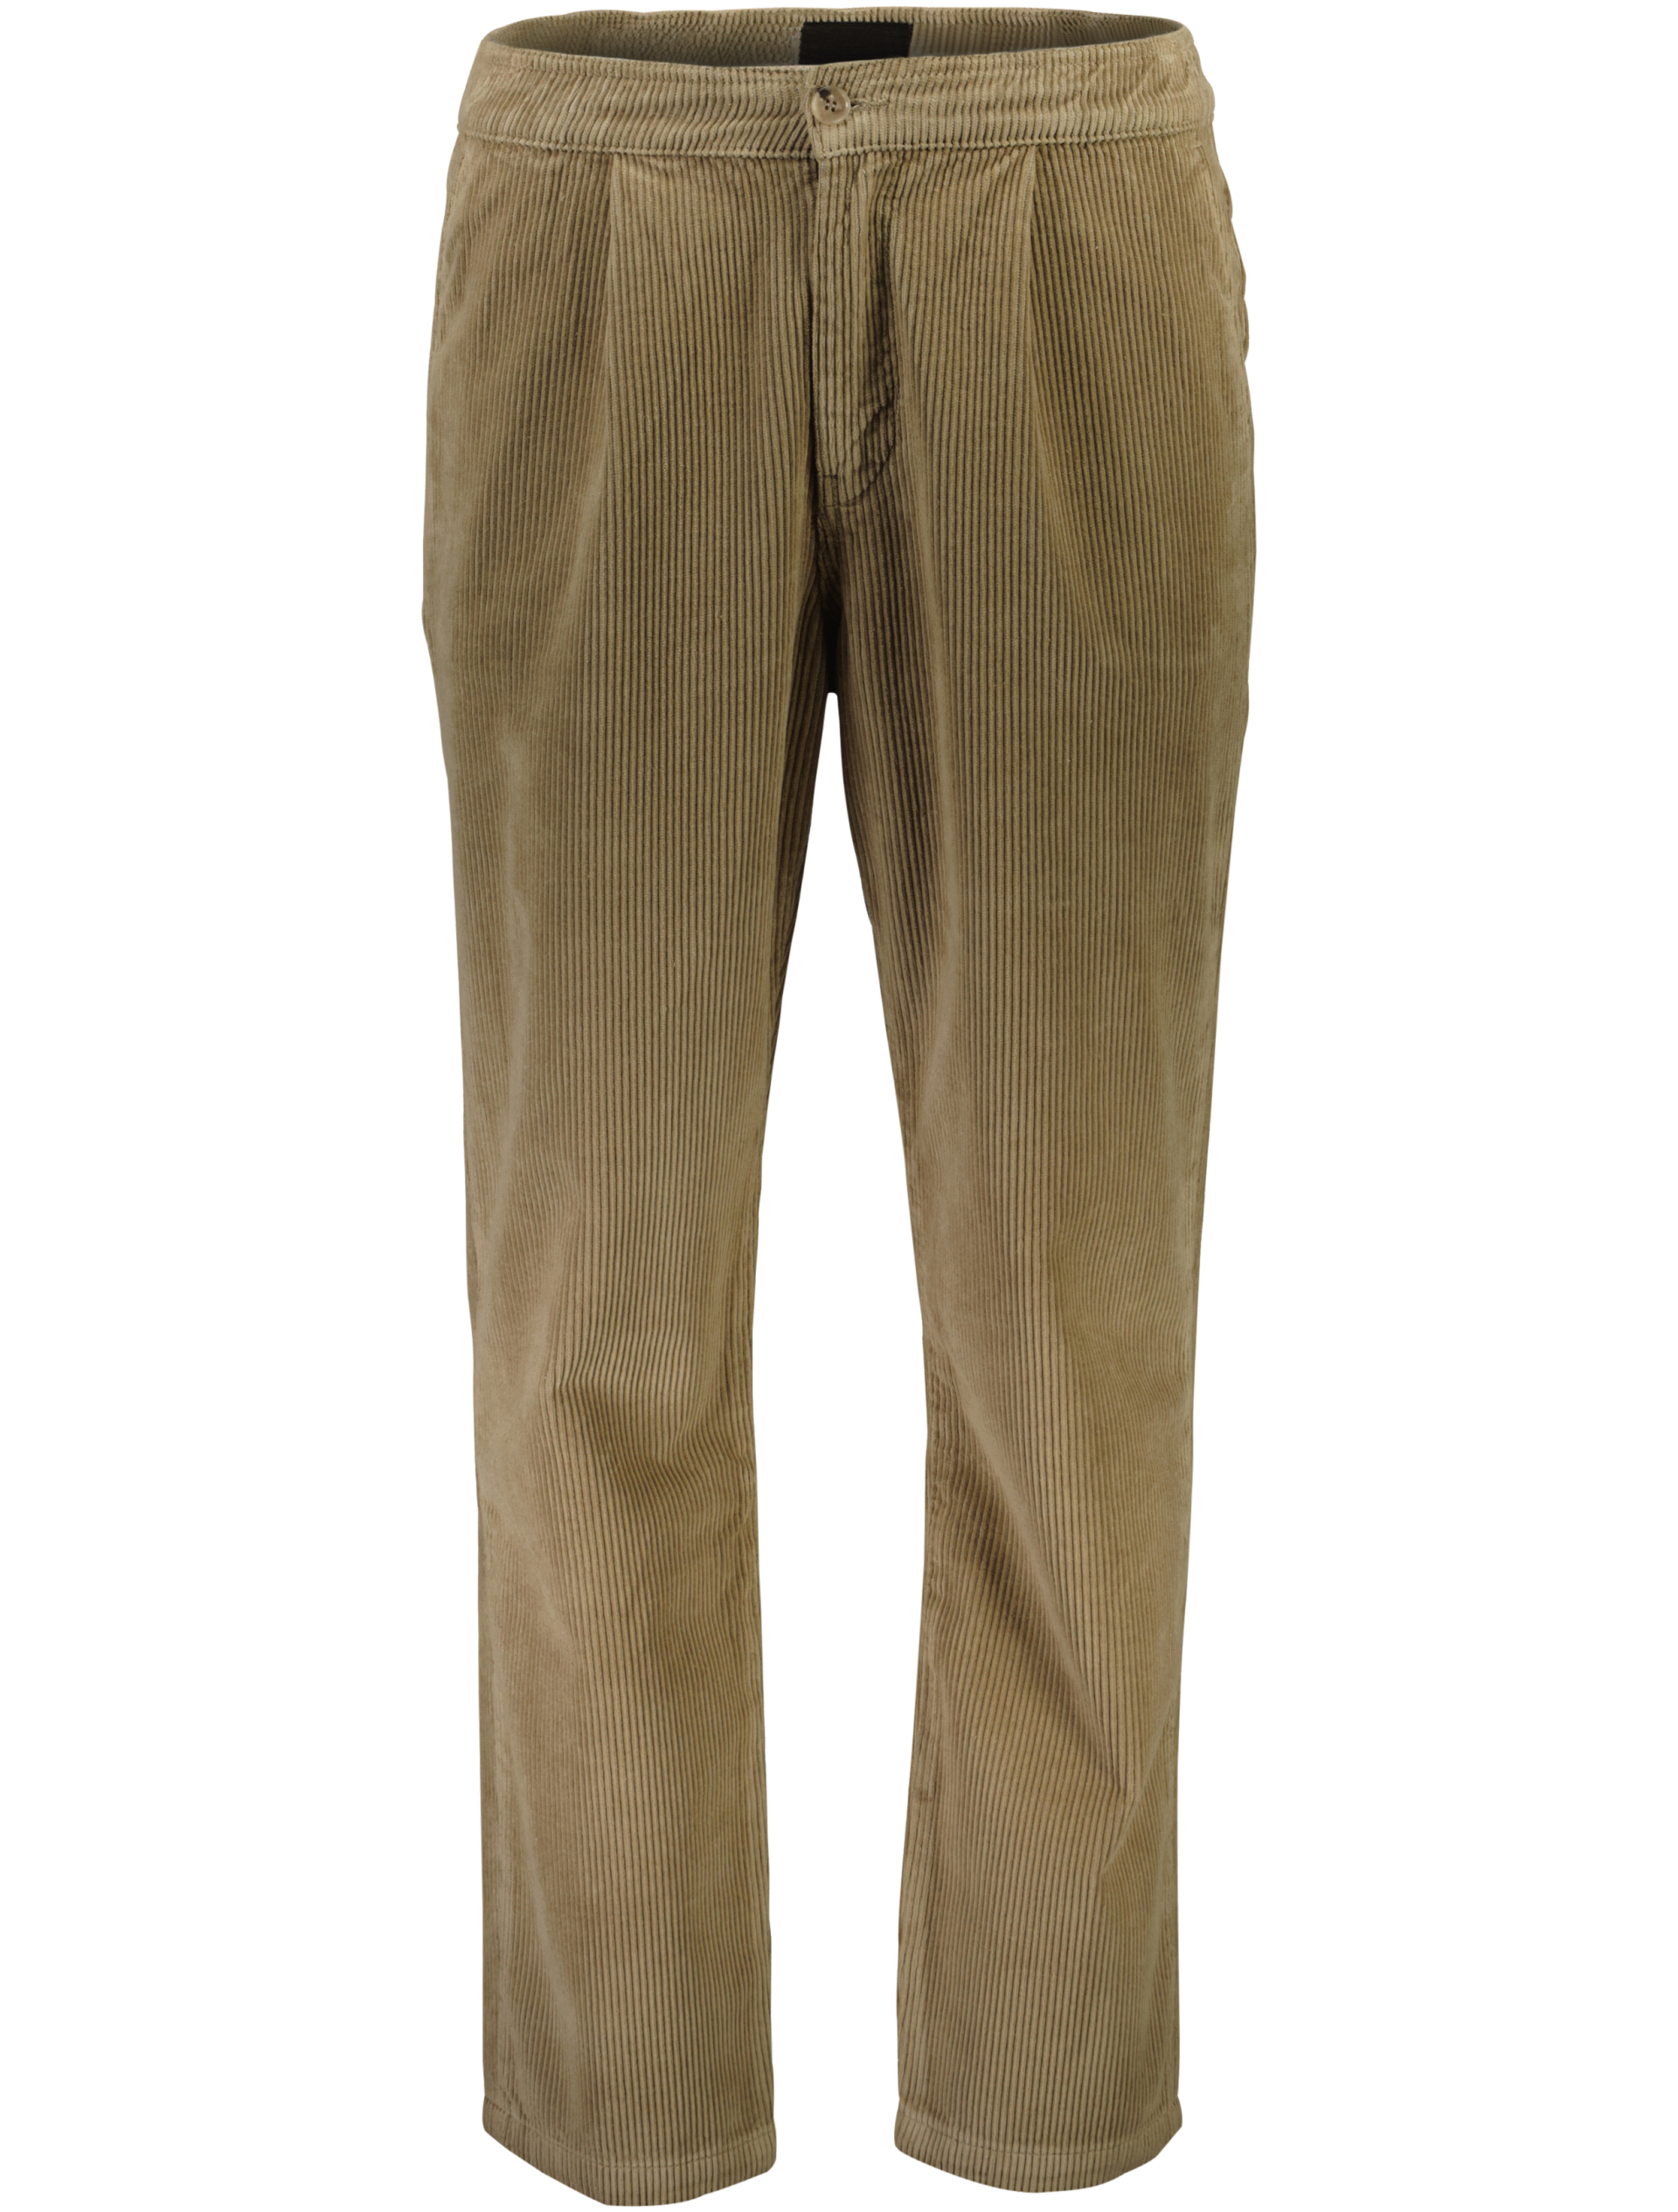 Junk de Luxe Corduroy trousers brown / lt brown